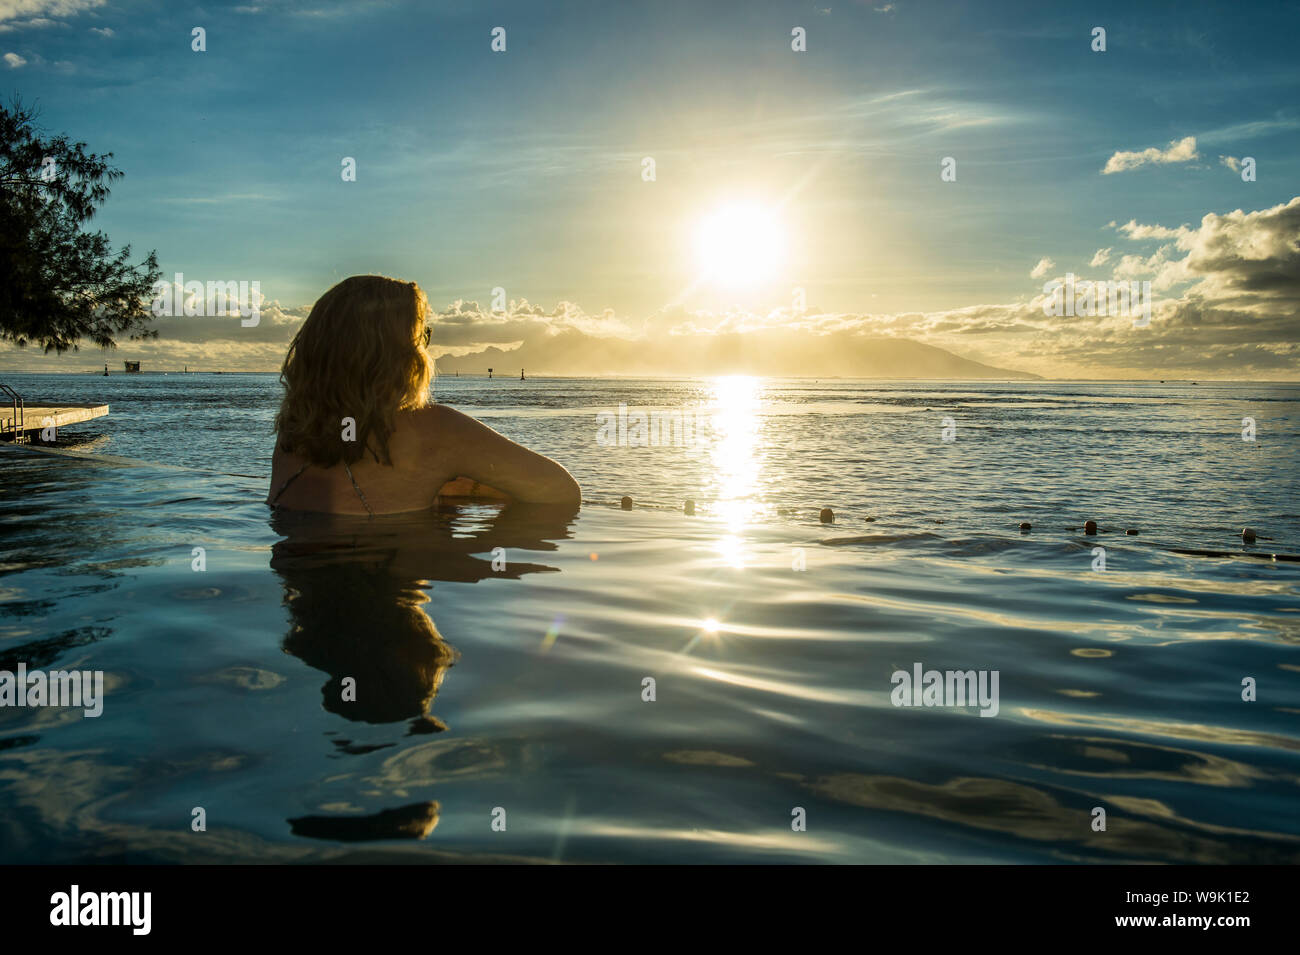 Donna godendo del tramonto in una piscina con Moorea in background, Papeete, Tahiti, Isole della Società, Polinesia francese, Pacific Foto Stock